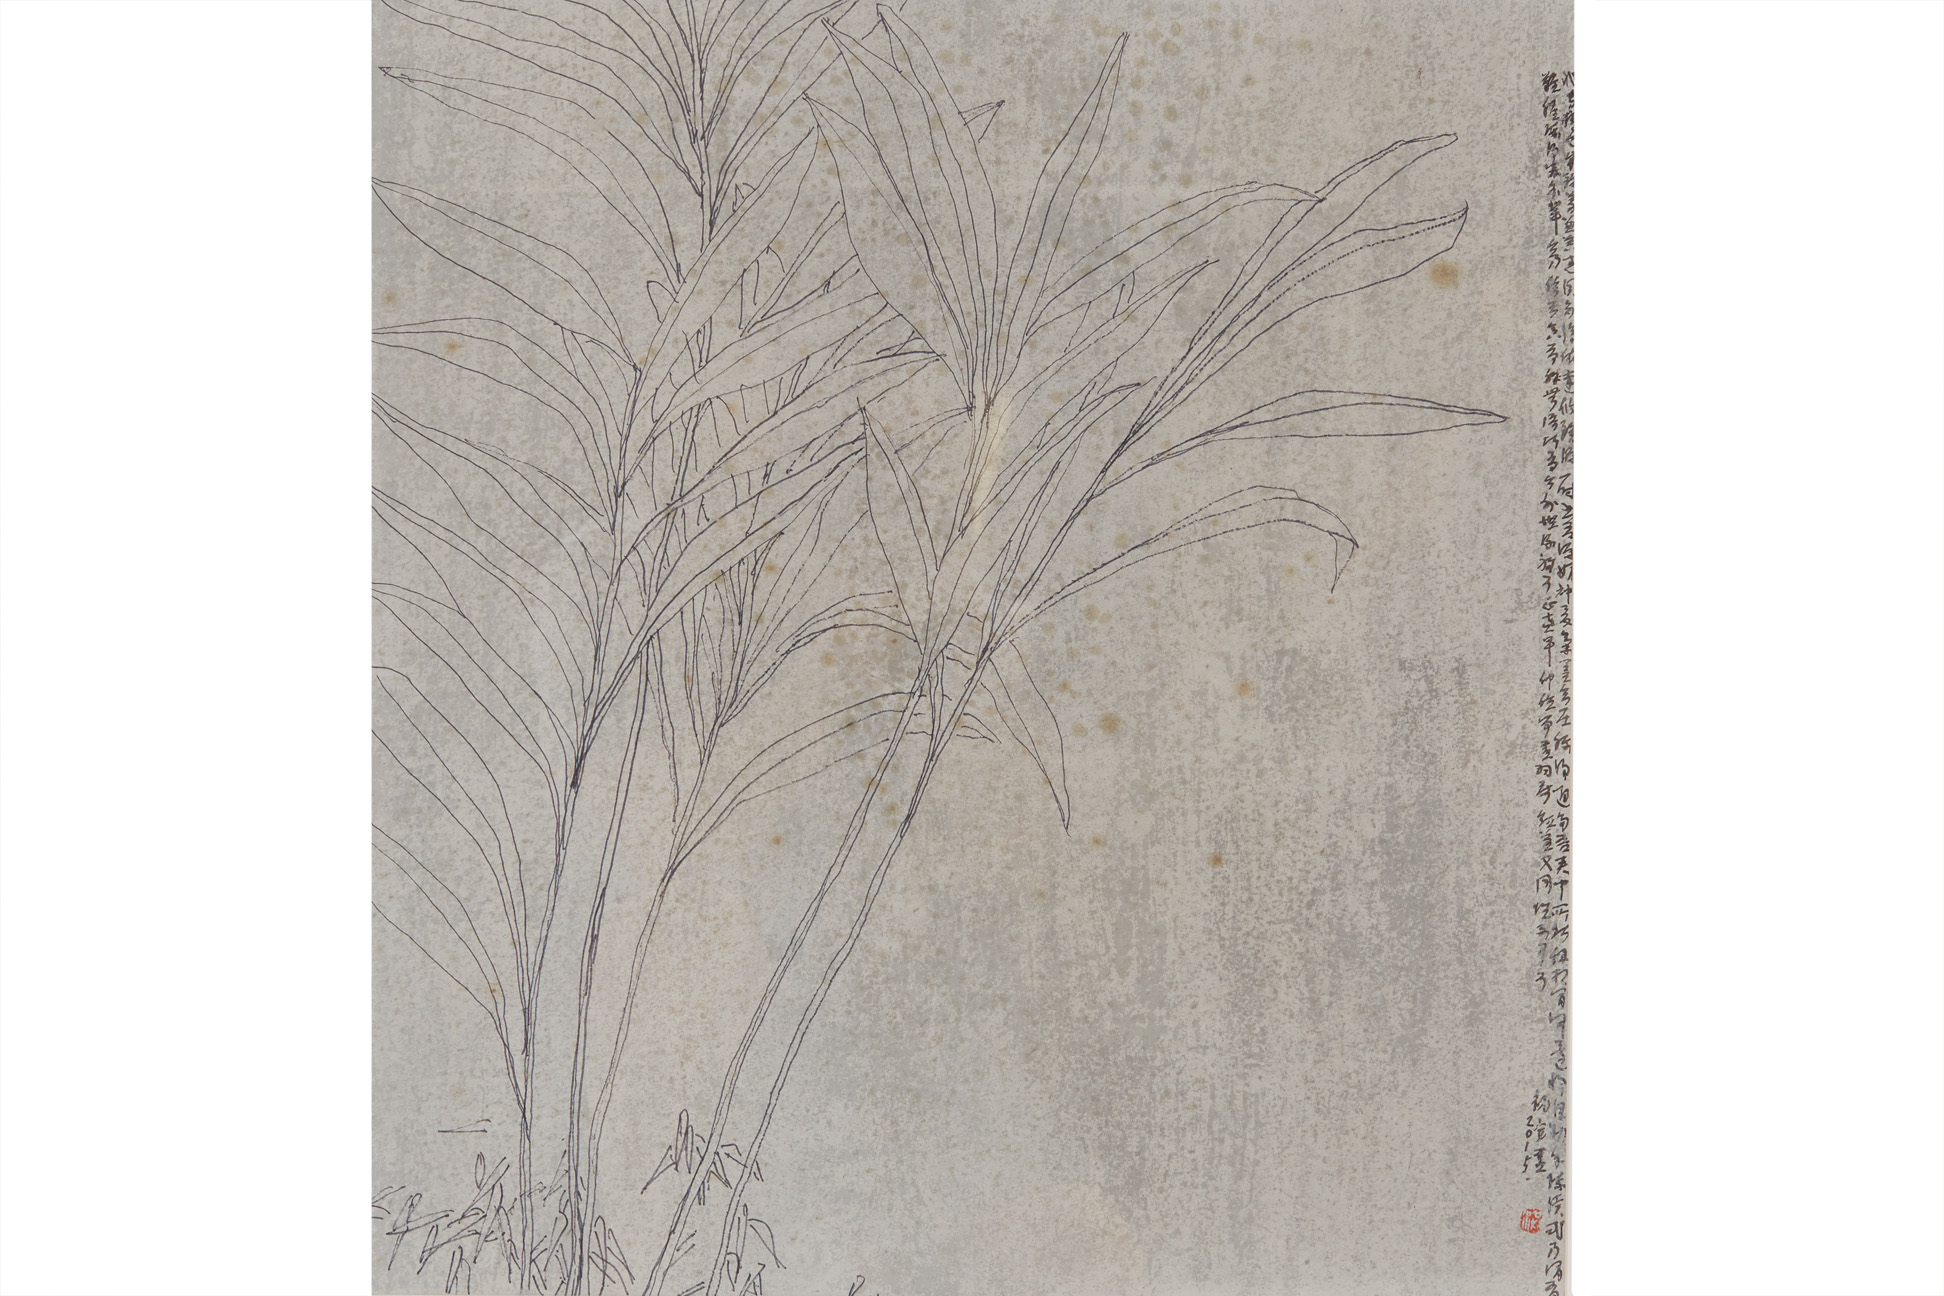 HONG ZHU AN (CHINESE, B.1955) - UNTITLED, 2015